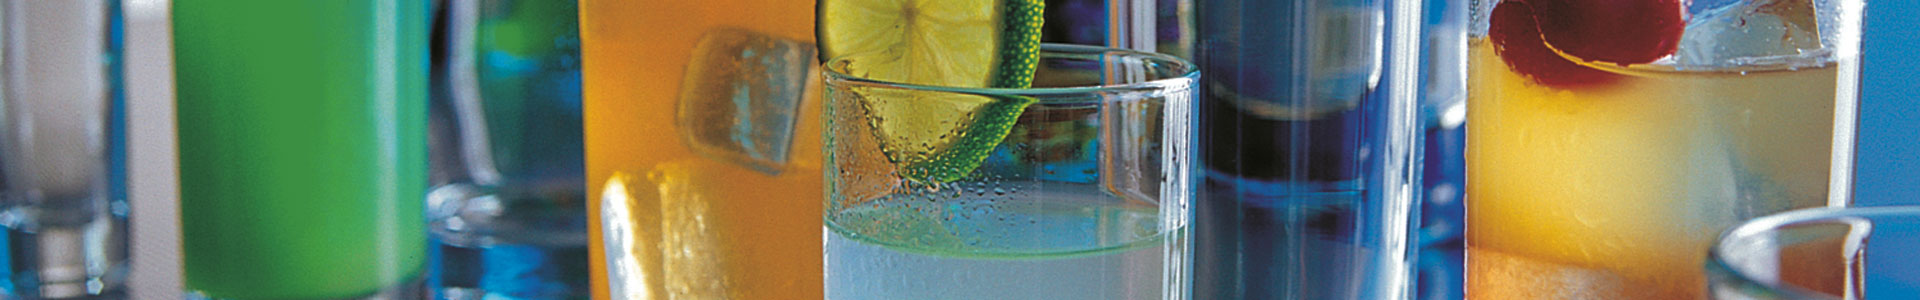 Arcoroc Islande Gläser mit bunten Cocktails gefüllt.